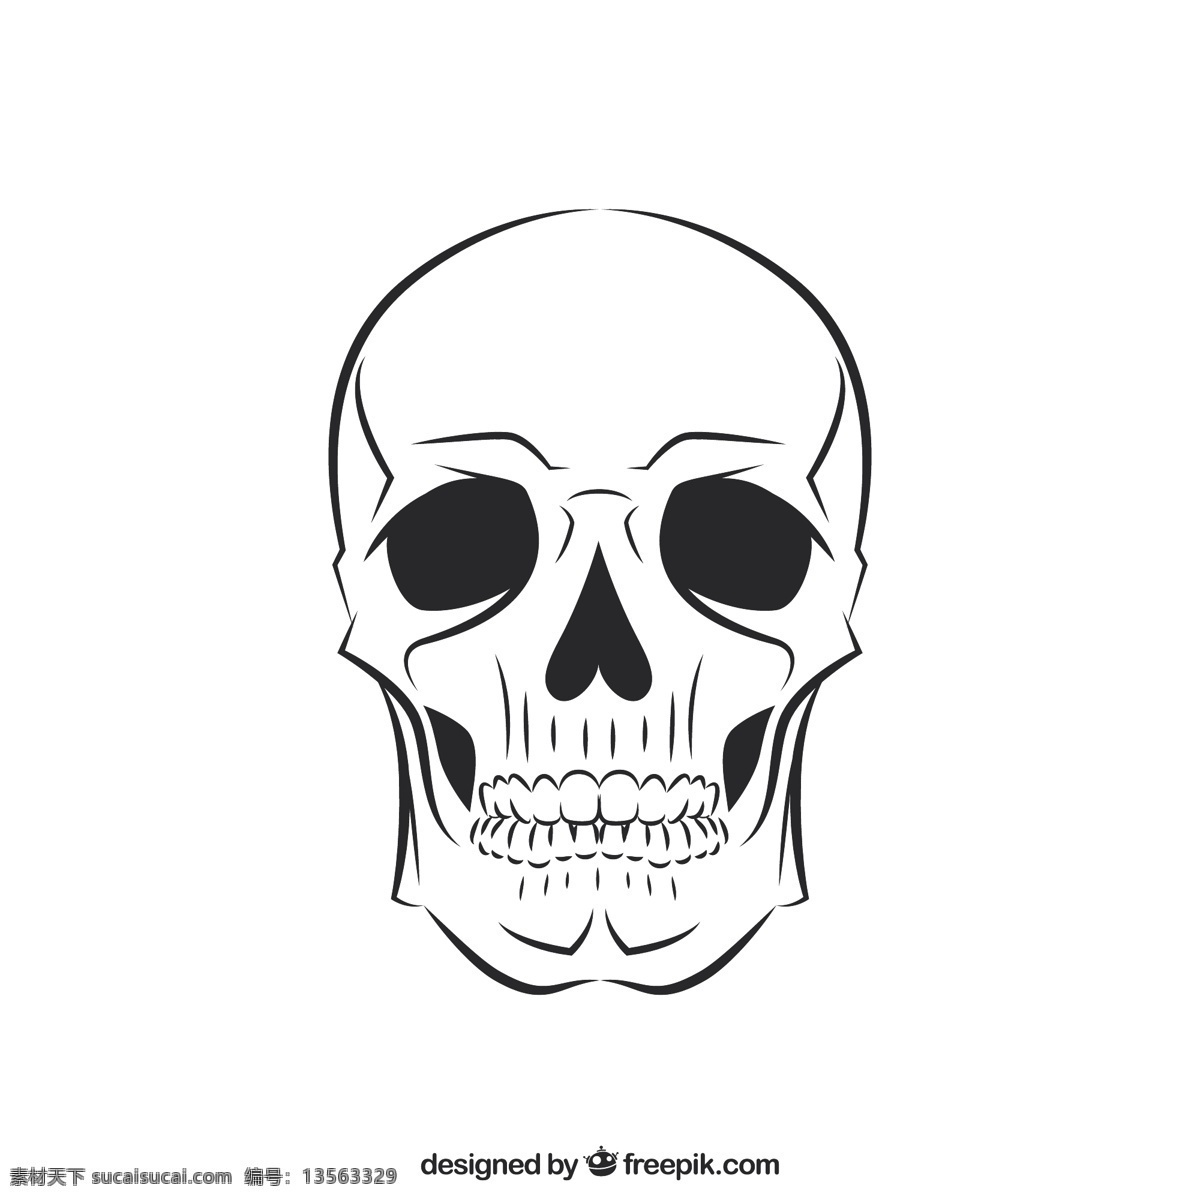 粗略的头骨 万圣节 头骨 手绘 人力 绘图 符号 骨架 死亡 骨头 邪恶的 粗略的 令人 毛骨悚然 白色